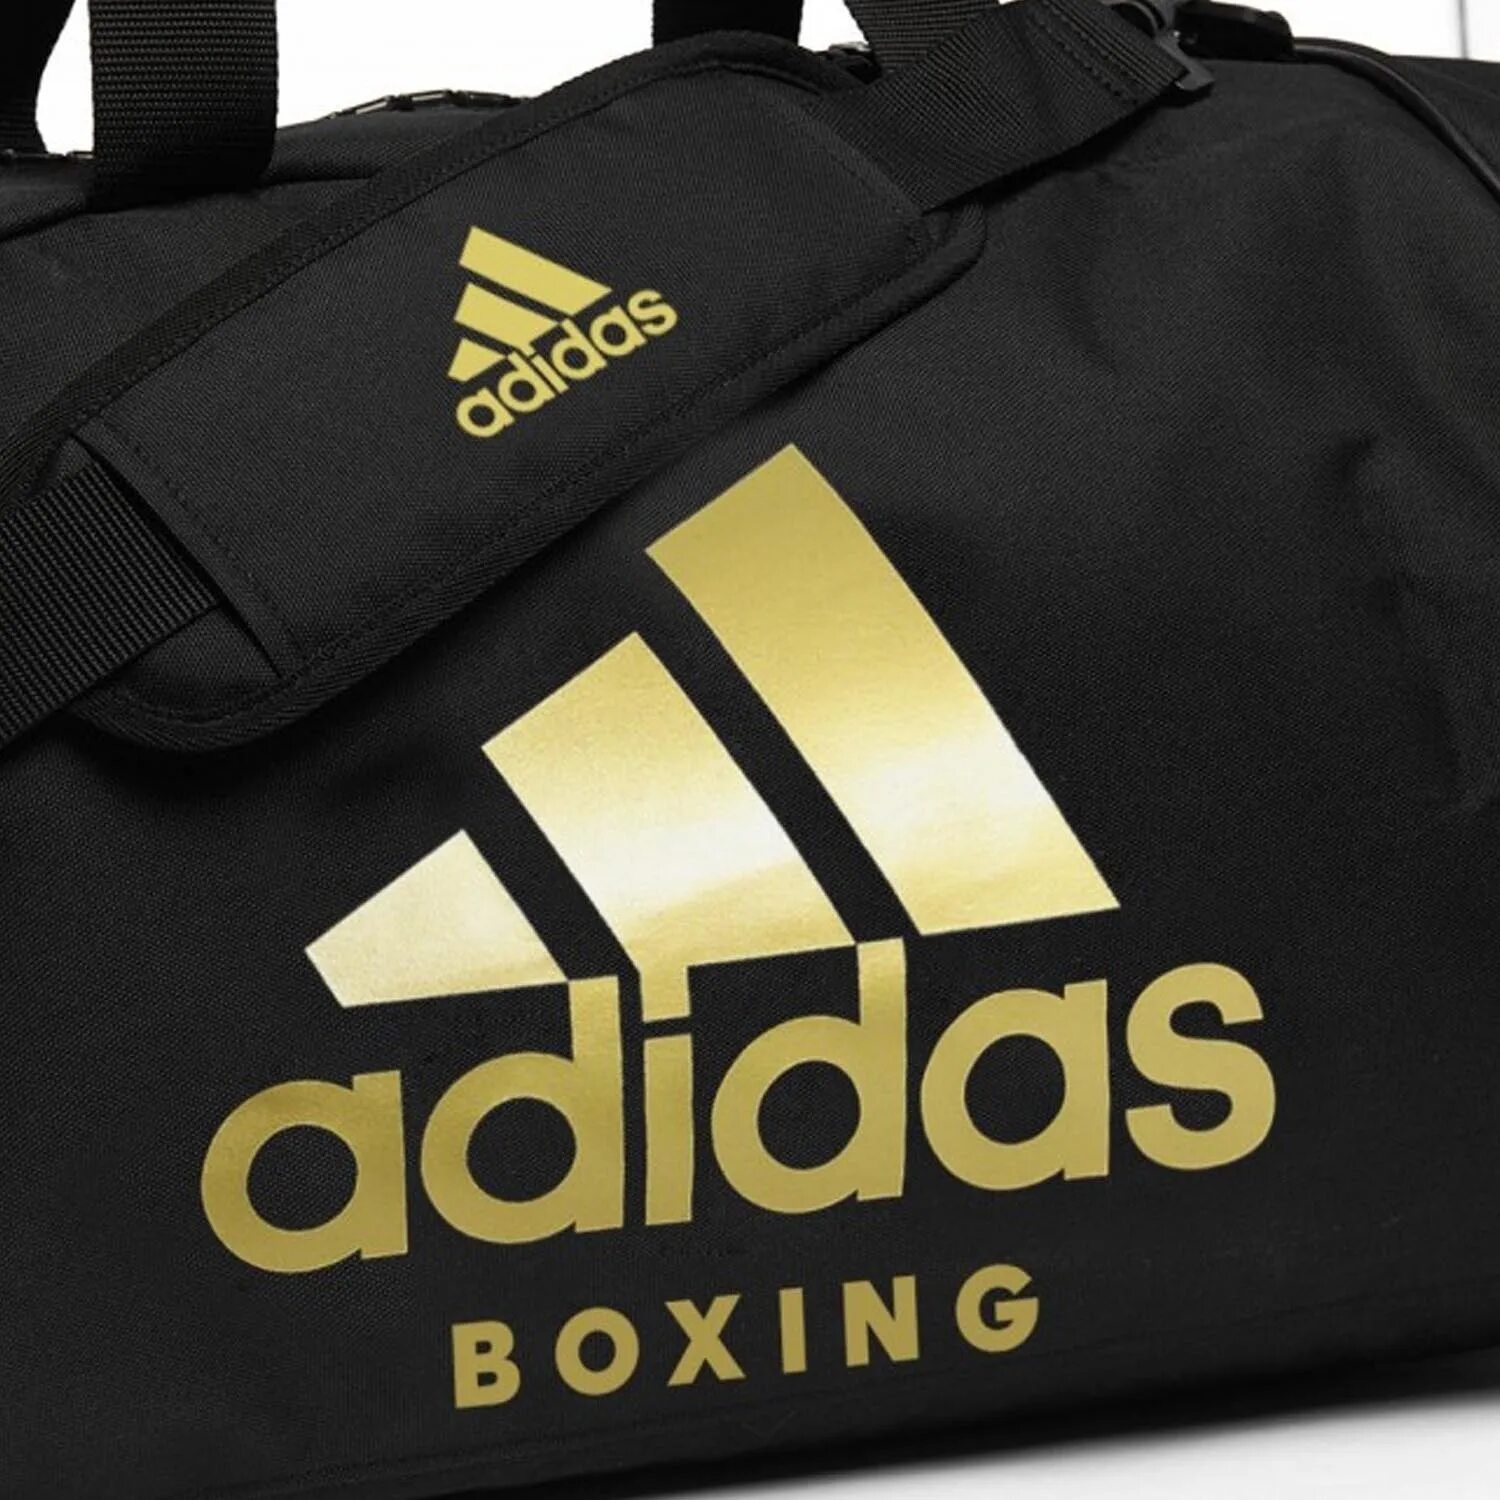 Сумка-рюкзак Training 2 in 1 Bag Judo s черно-Золотая (размер s). Сумка рюкзак адидас дзюдо. Adidas 2in1 Bag. Adidas Training Bag Combat Sport (adiacc052). Сумка дзюдо